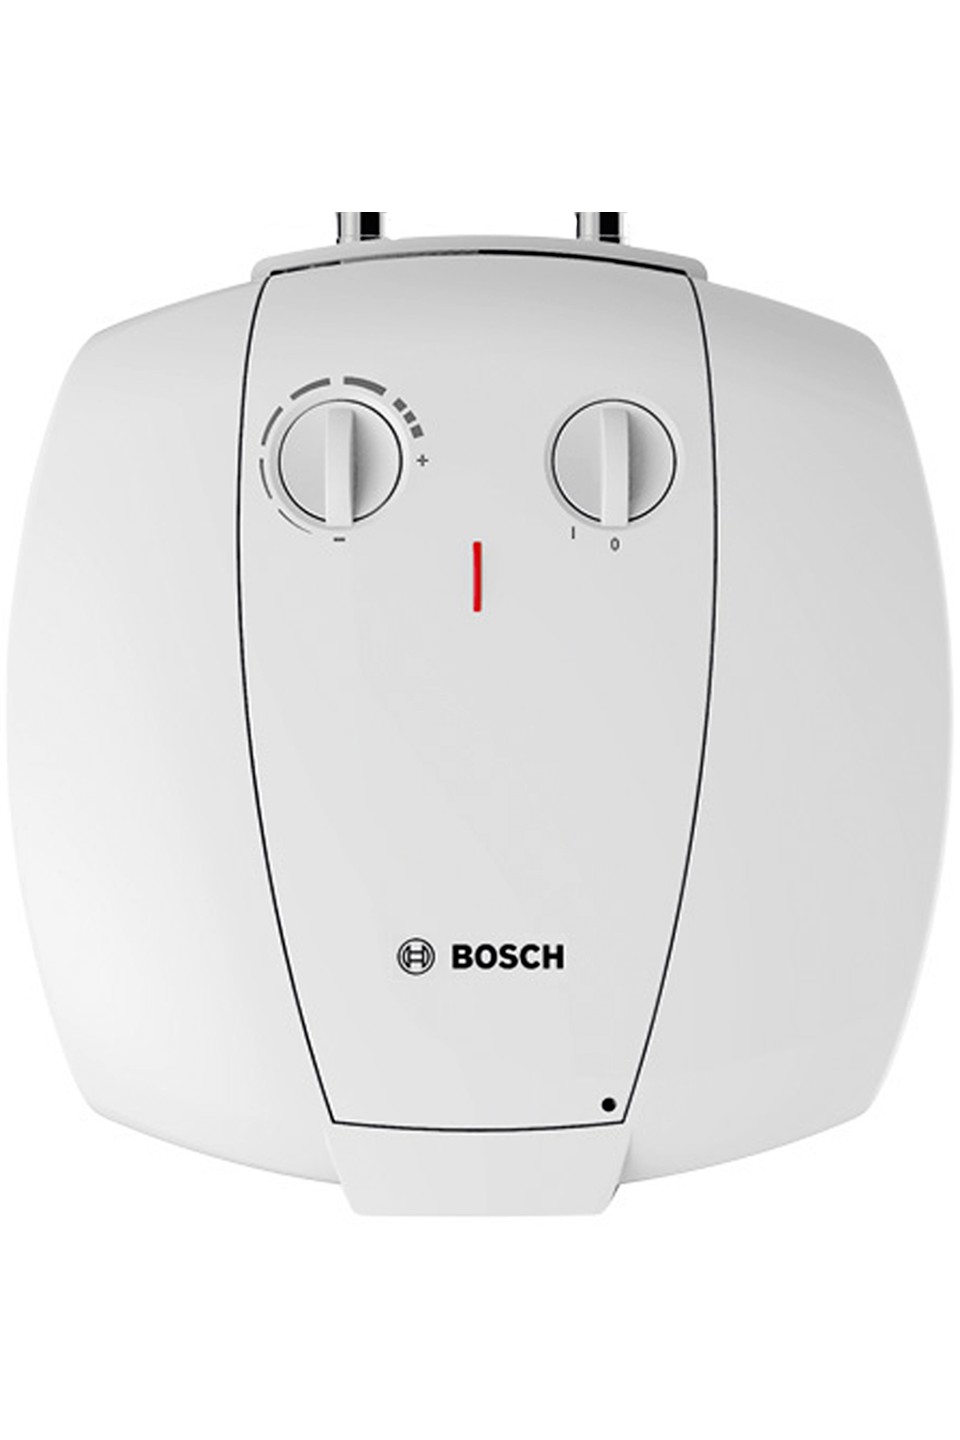 Bosch TR 2000 T 15 T (7736504744)